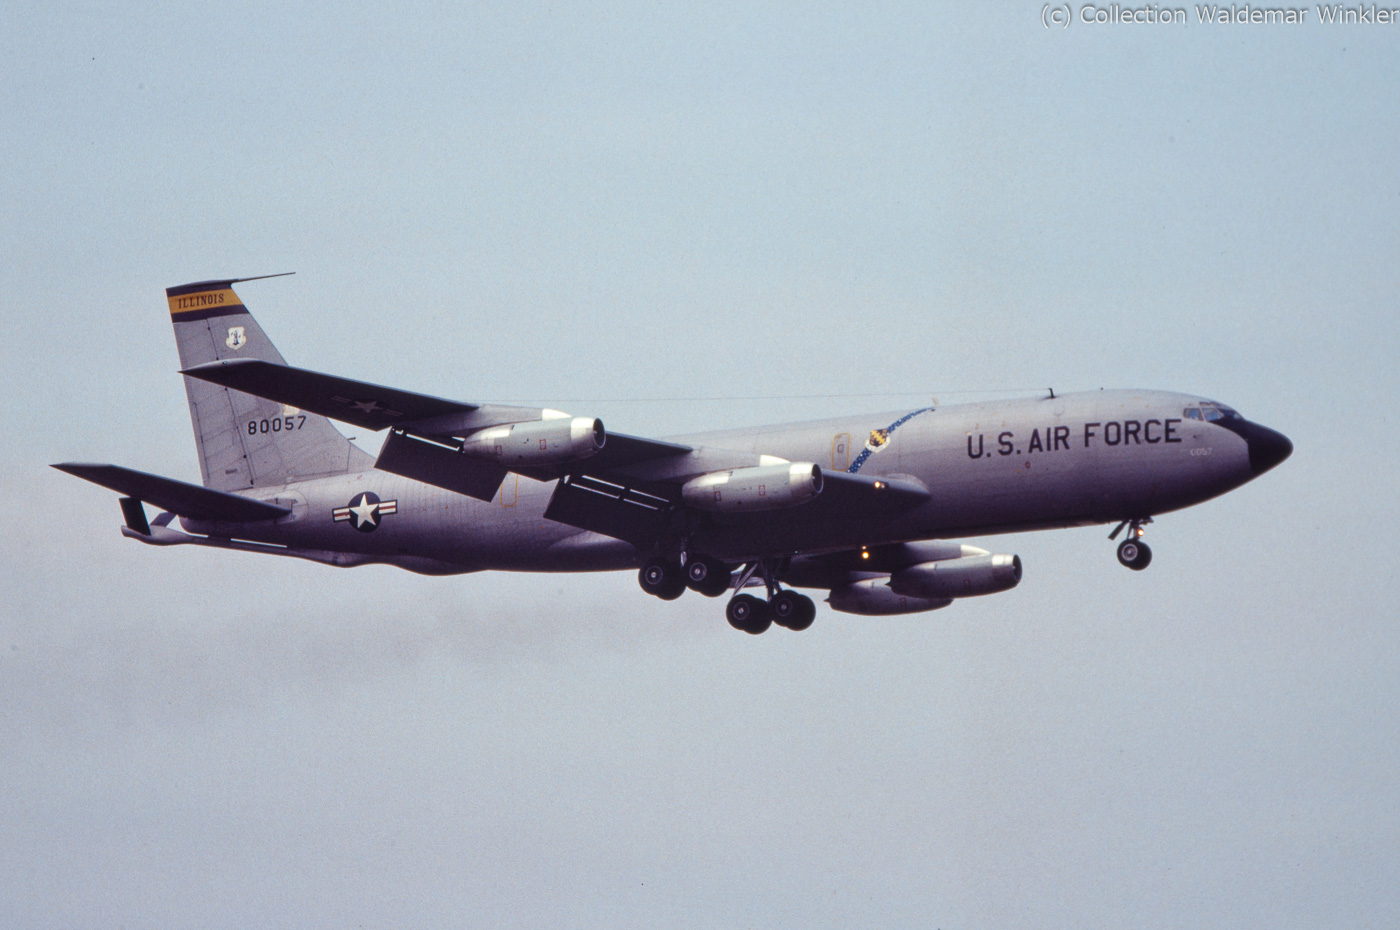 KC-135_Stratotanker_DSC_3131.jpg